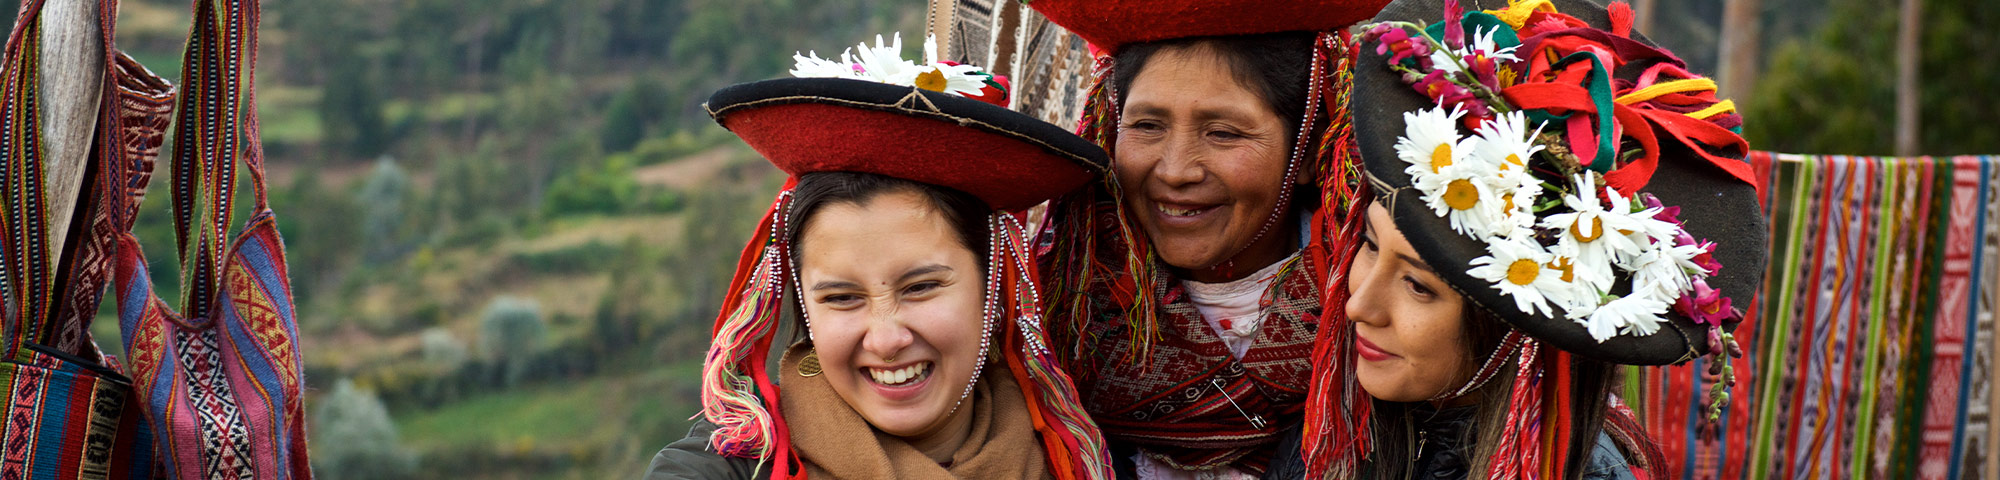 Perú reconocido en Europa como destino preferido